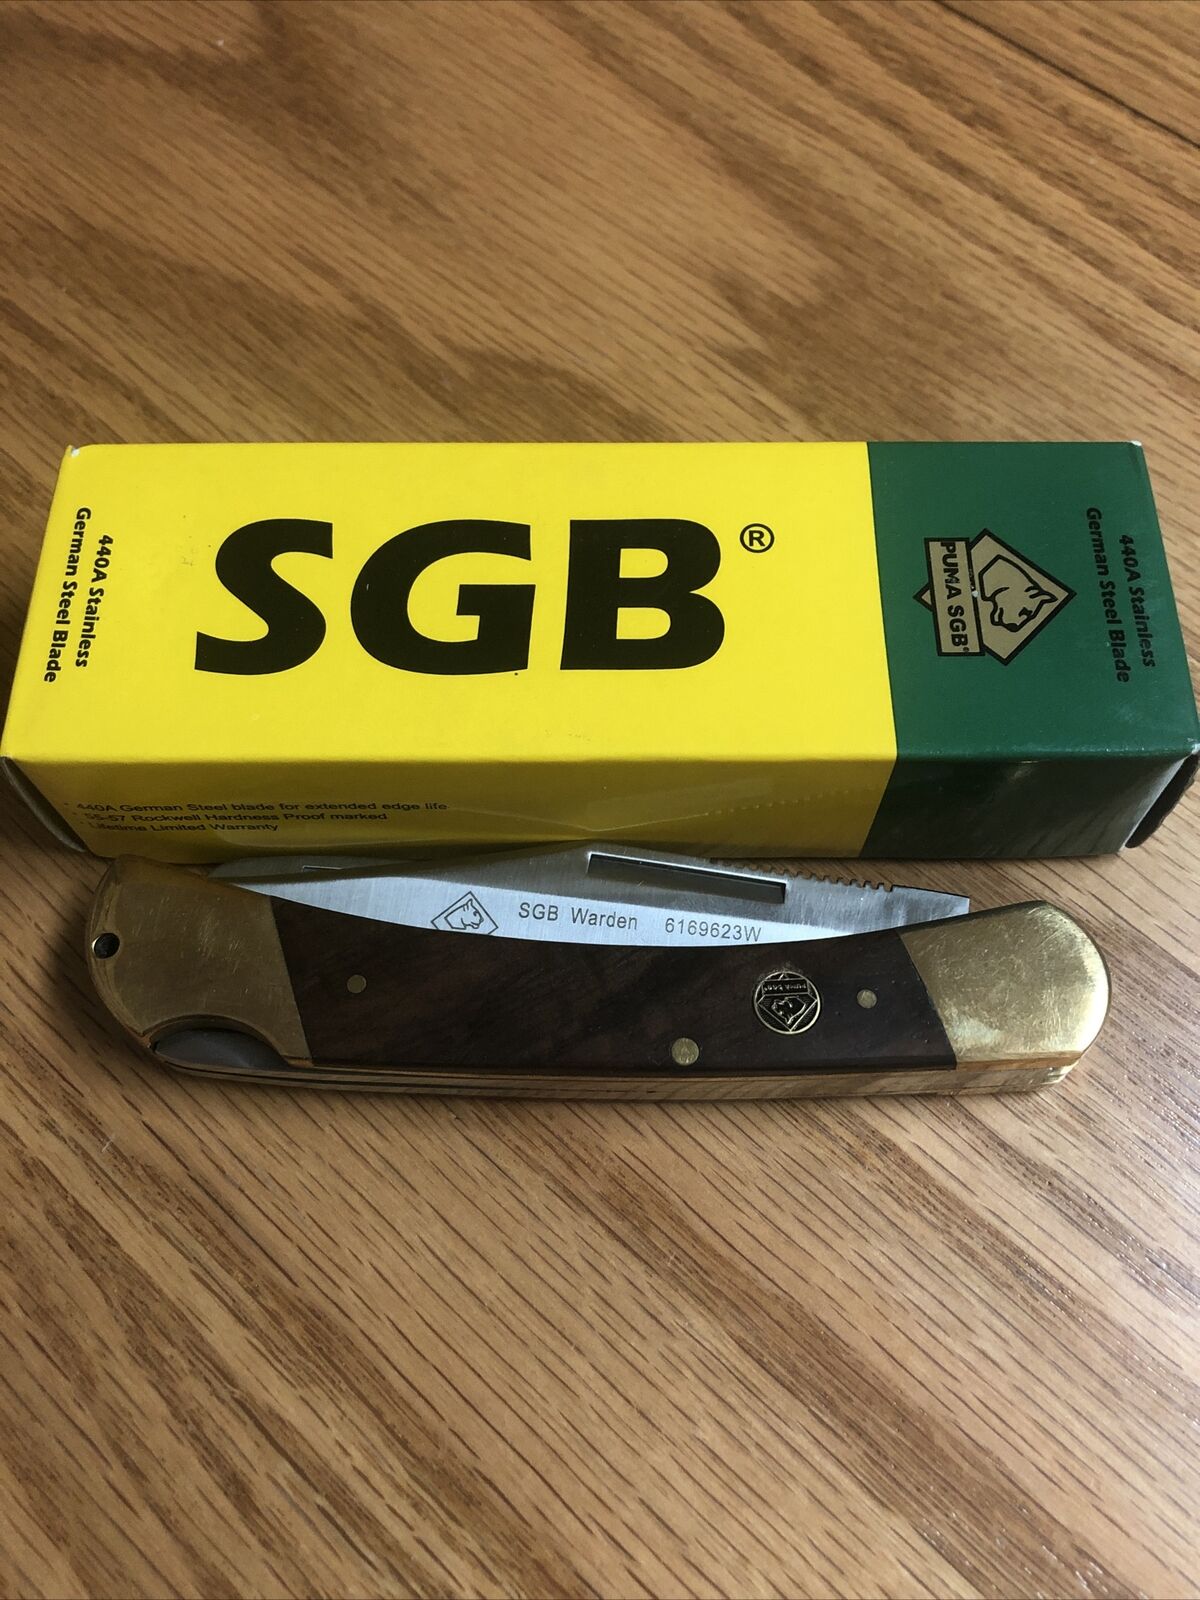 Puma SGB Warden with Saw 3.7" Blade Lockback Pocket Knife